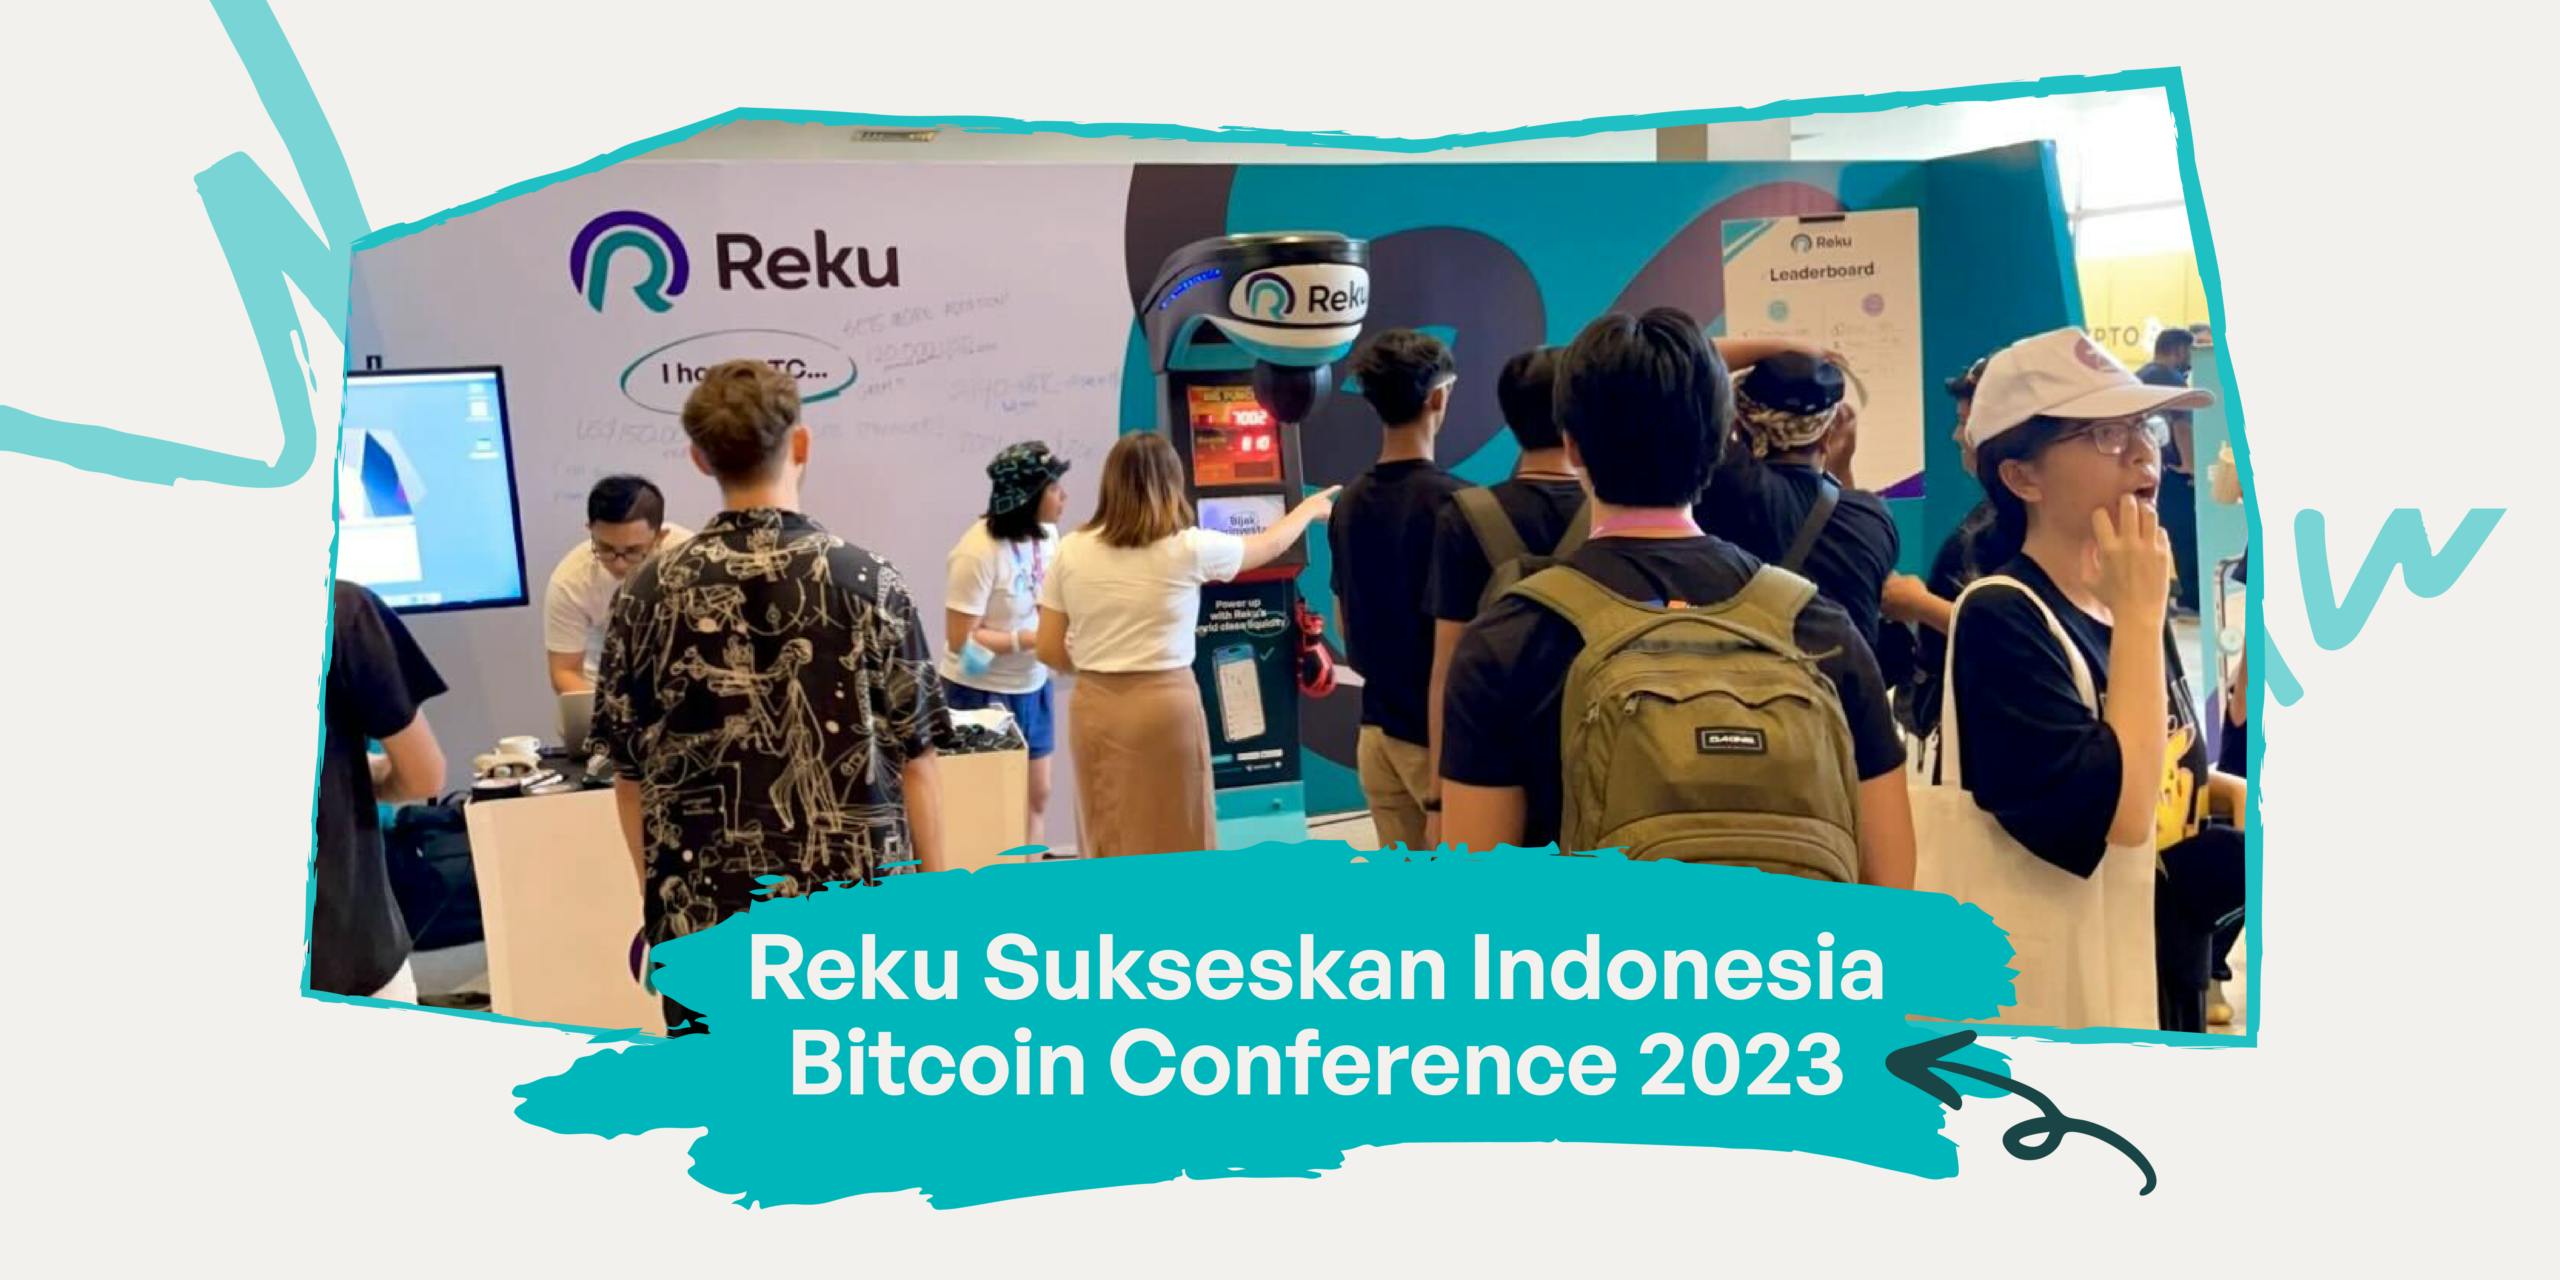 Reku Sukseskan Indonesia Bitcoin Conference 2023, Tingkatkan Pertumbuhan dan Adopsi Crypto di Indonesia